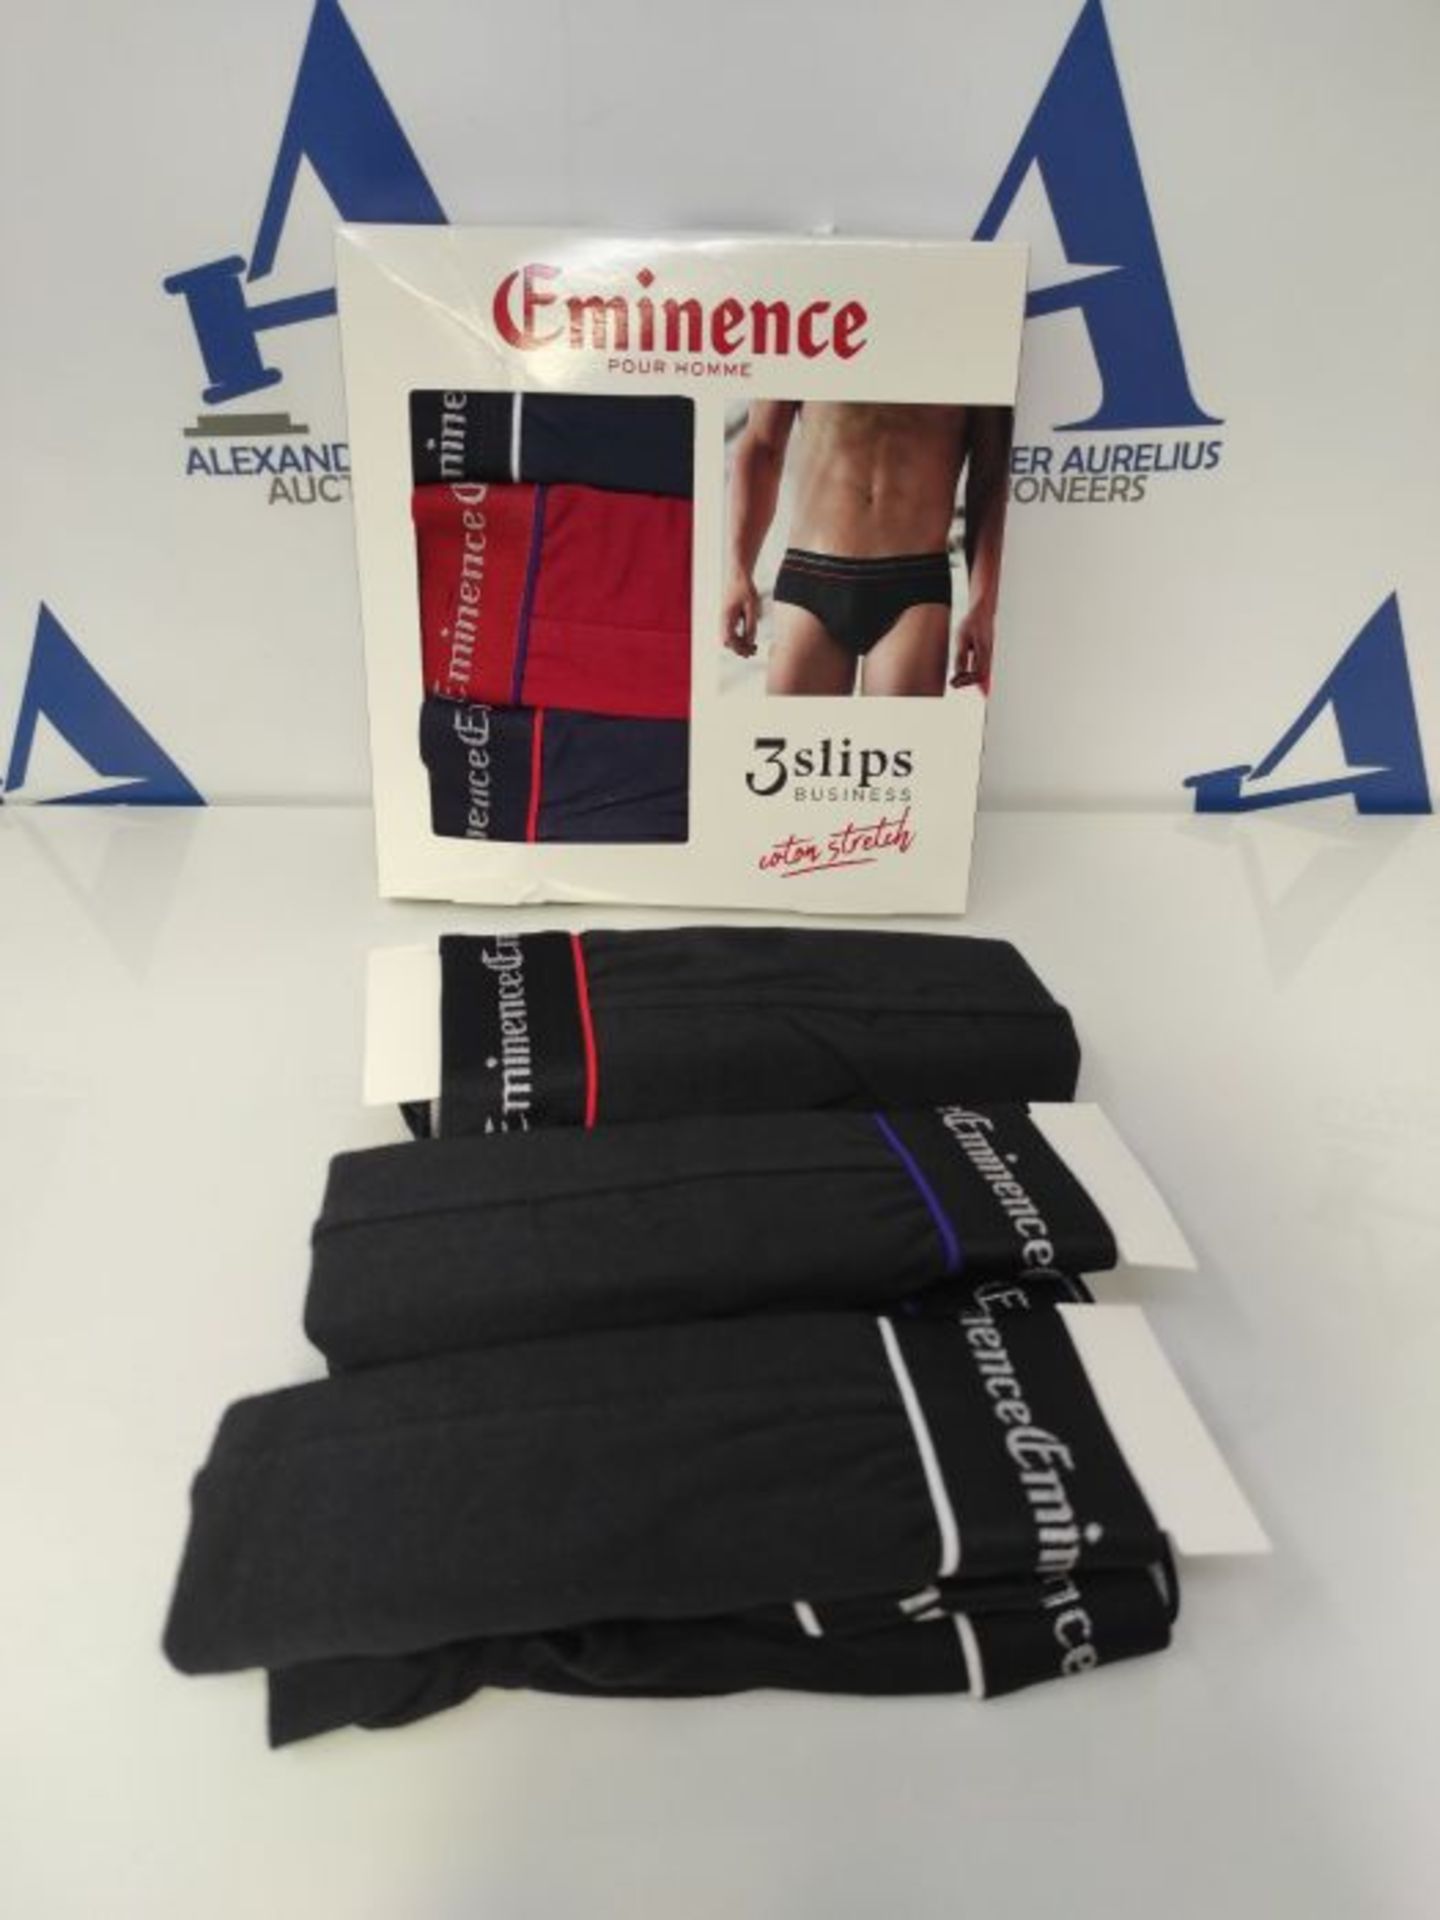 Eminence Men's Promo Business Briefs, Noir/Noir/Noir/Marine/Rouge/Marine, XX-Large - Image 2 of 2